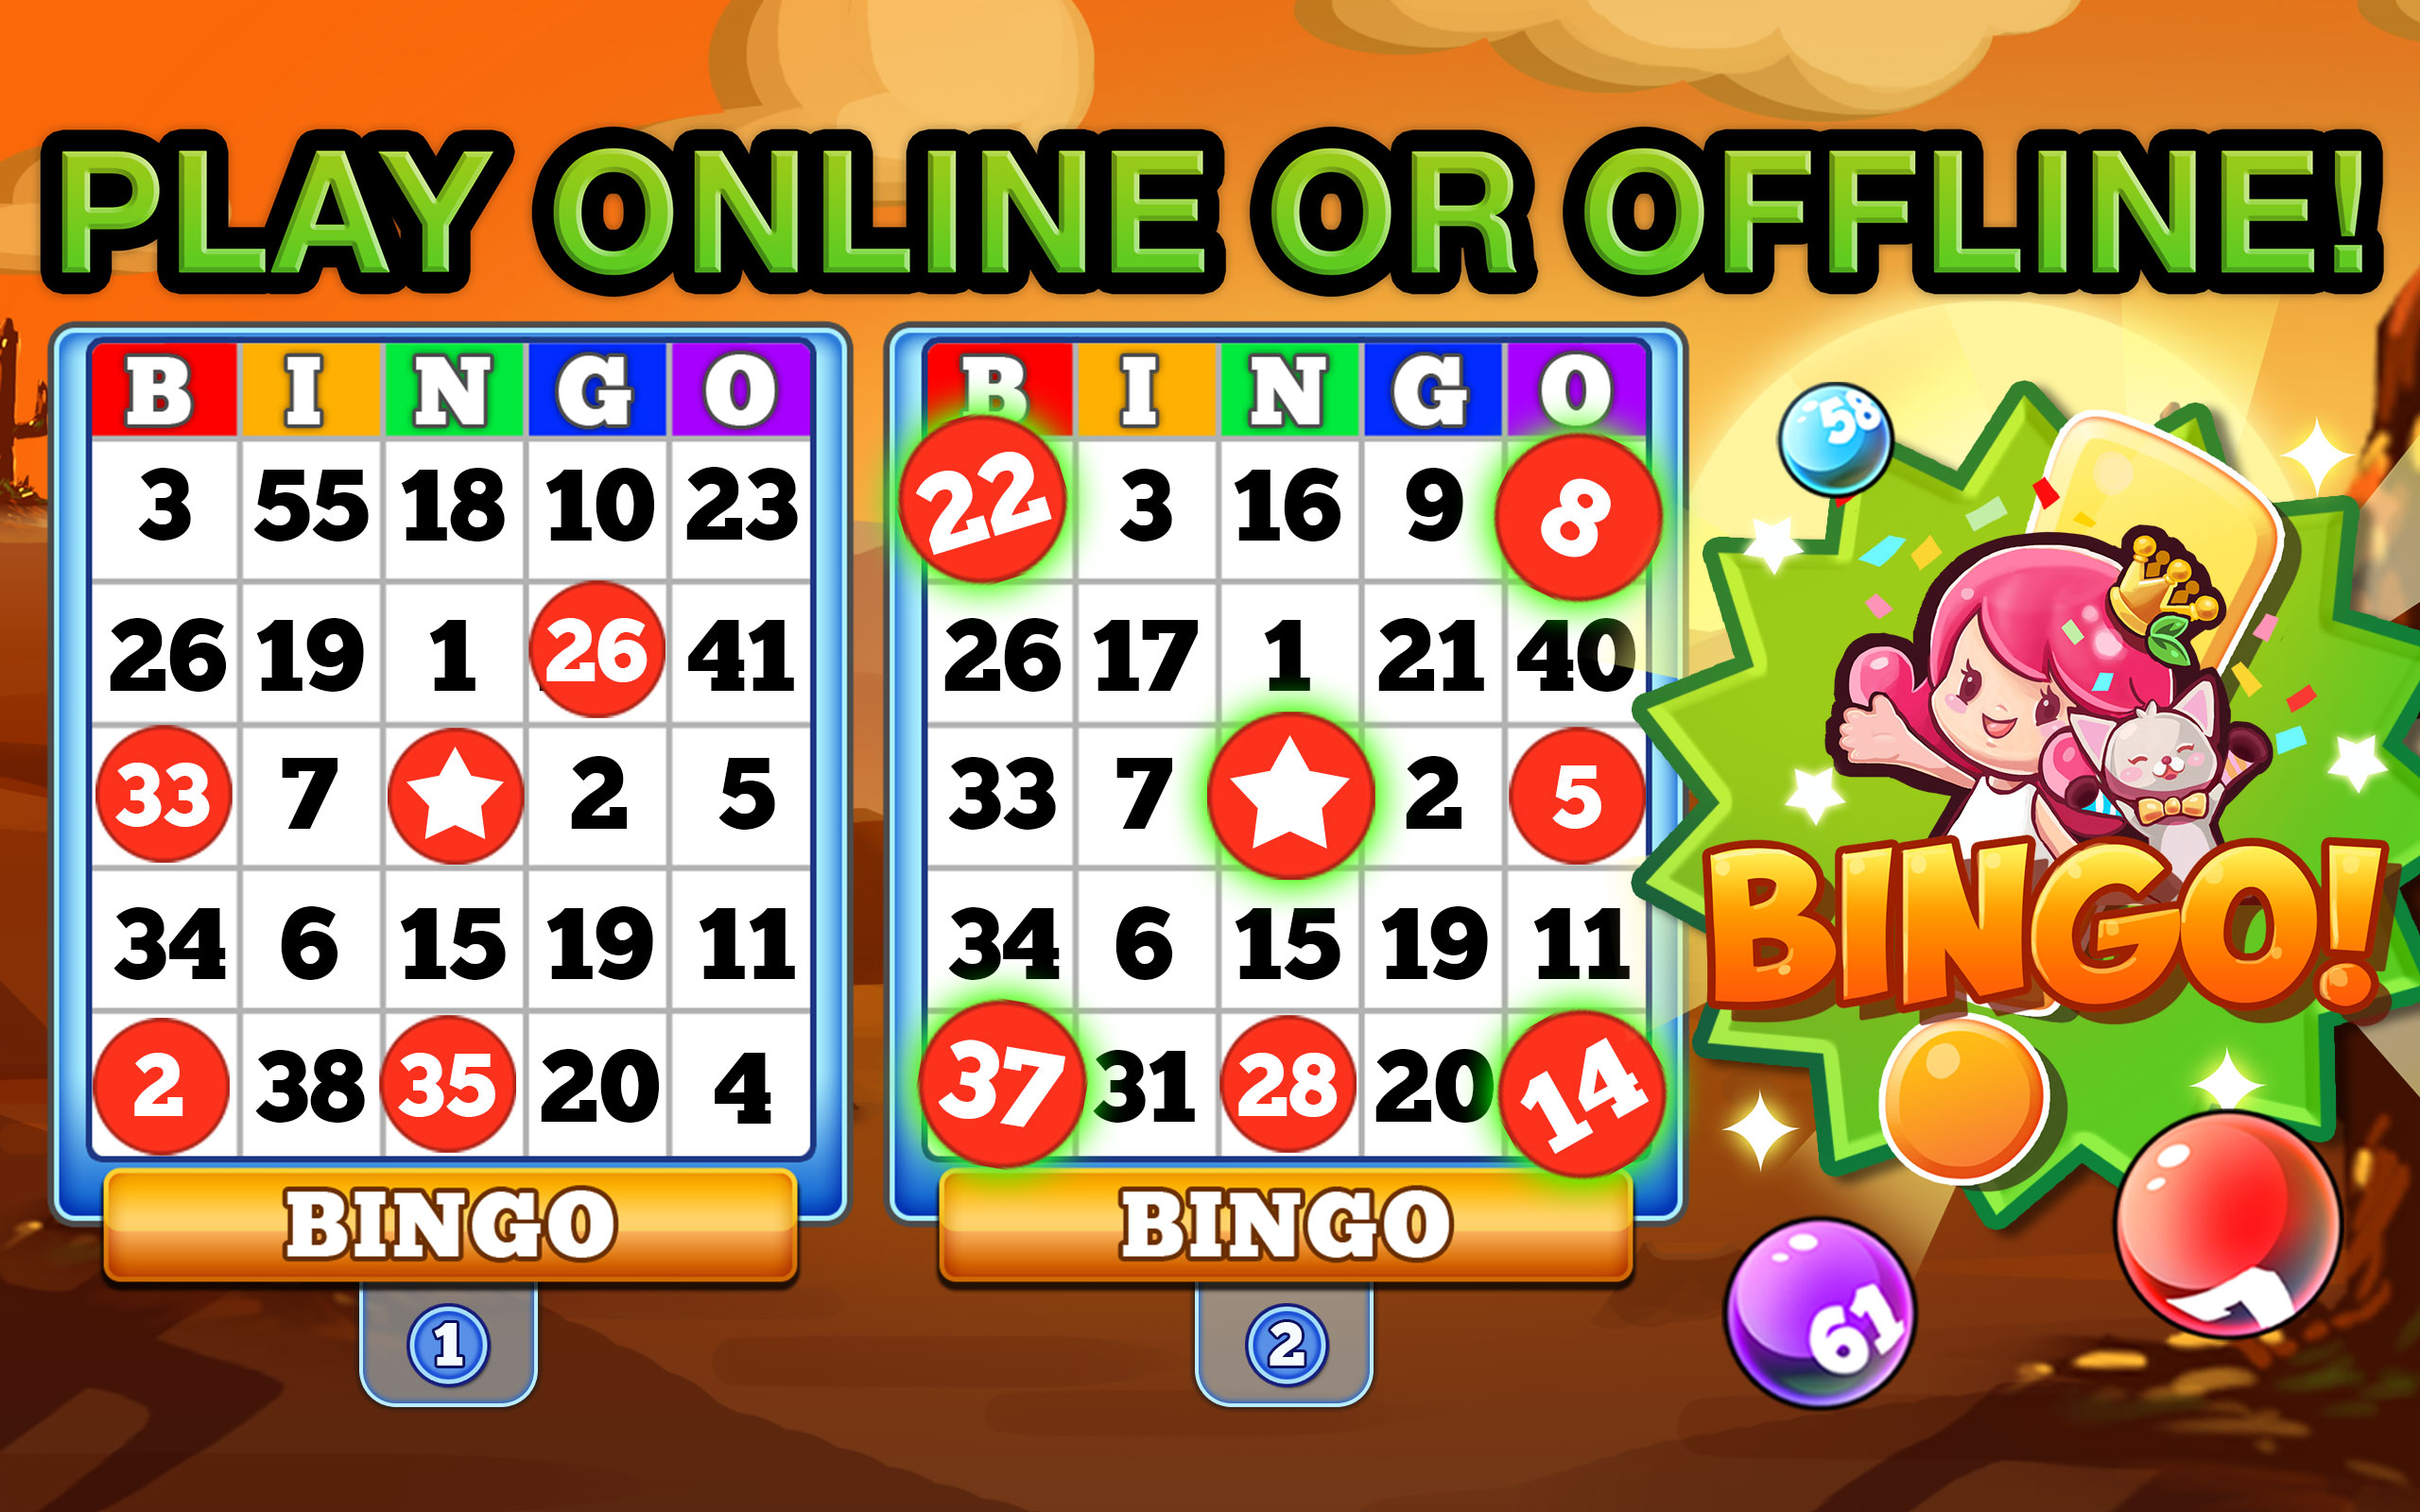 Bingo gratis online rich casino México 239858